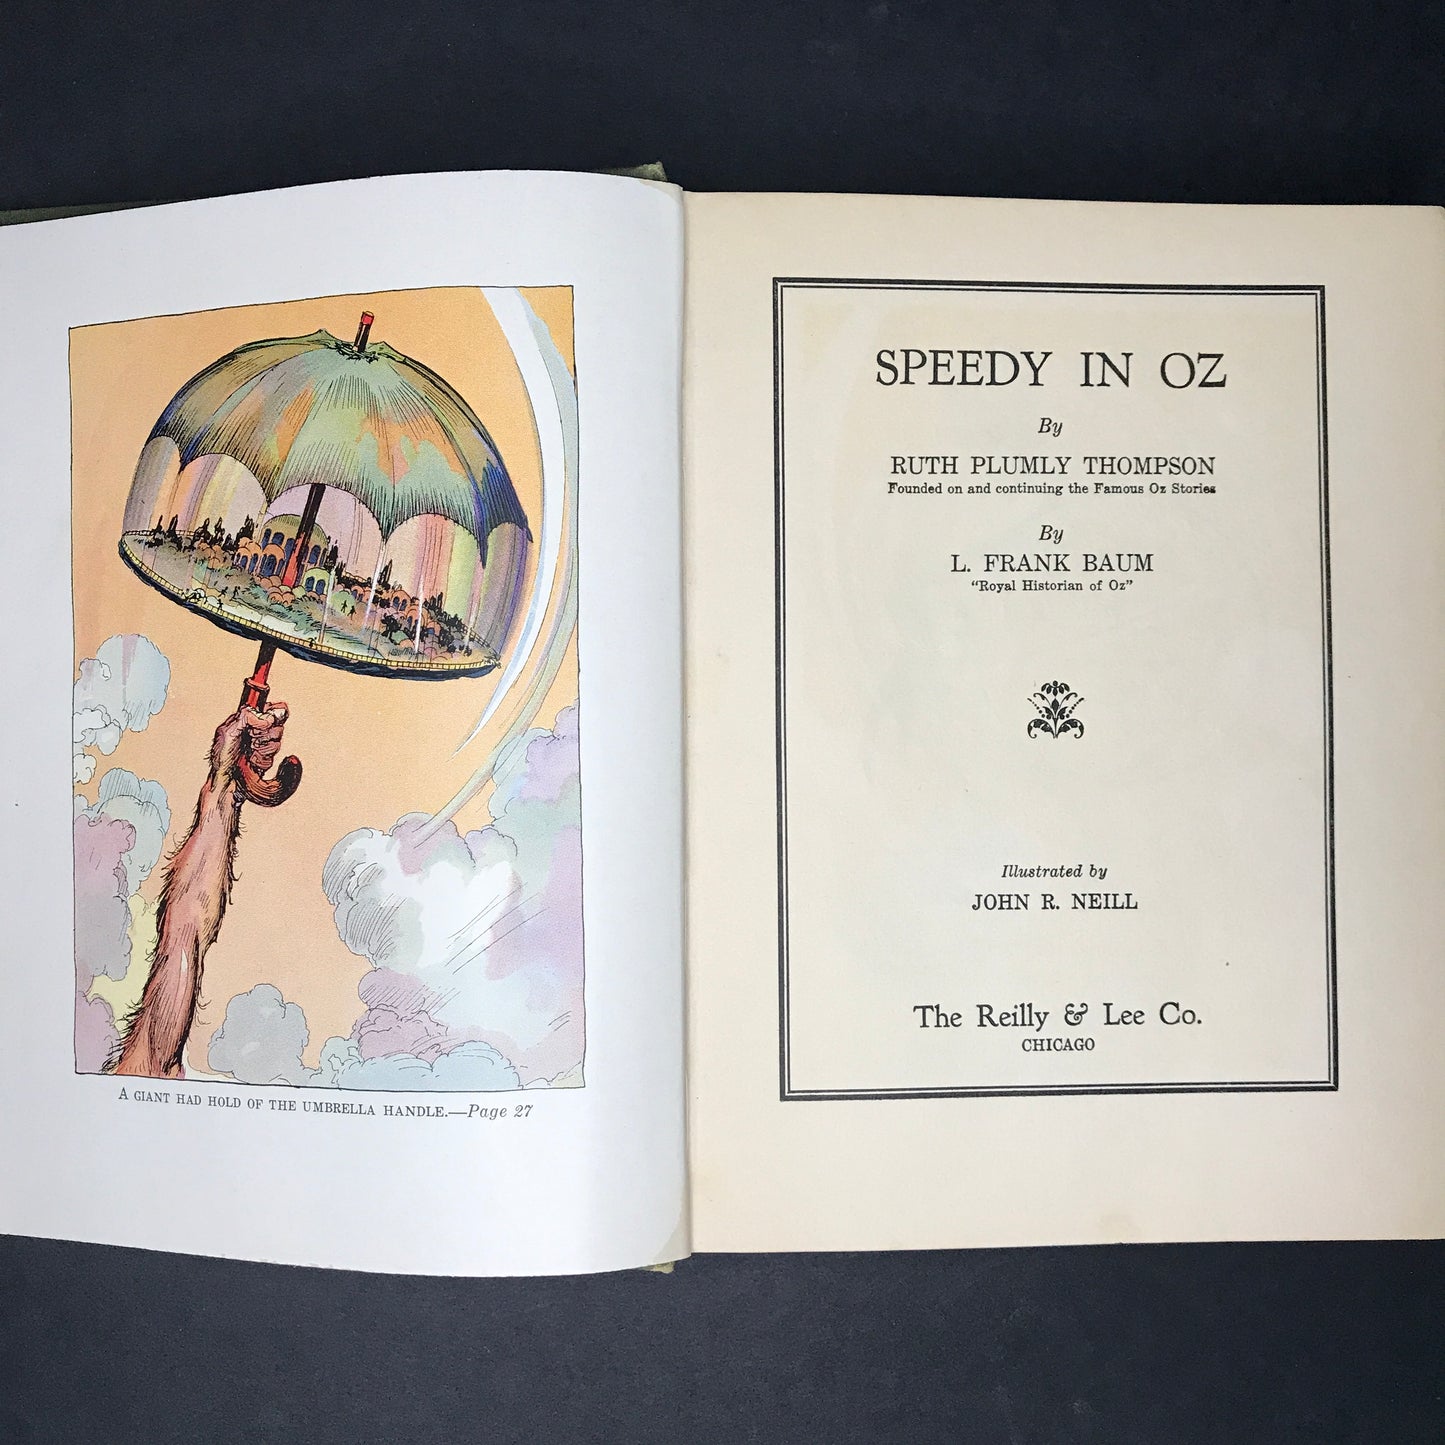 Speedy in Oz - Ruth Plumly Thompson - L. Frank Baum - 1934 - 1st Edition